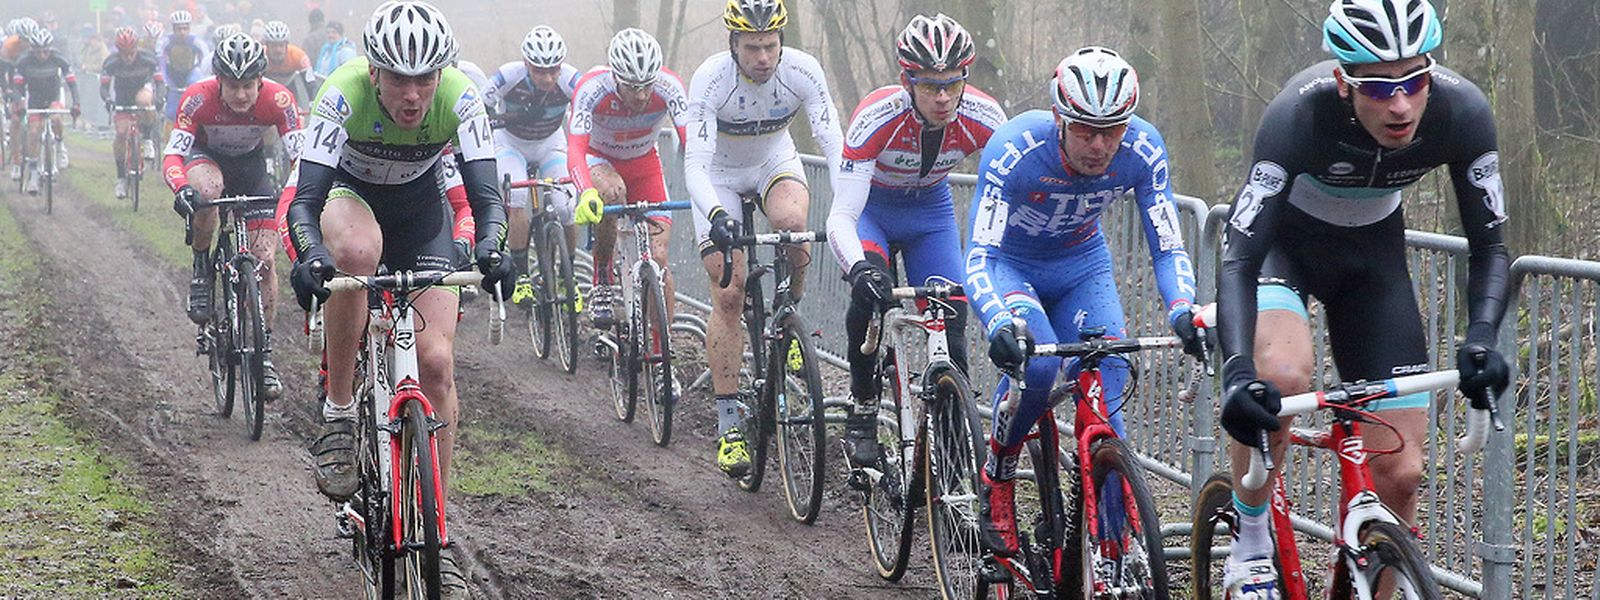 Am Sonntag werden die Radsportler wieder in den Wäldern Luxemburgs um Siege kämpfen.